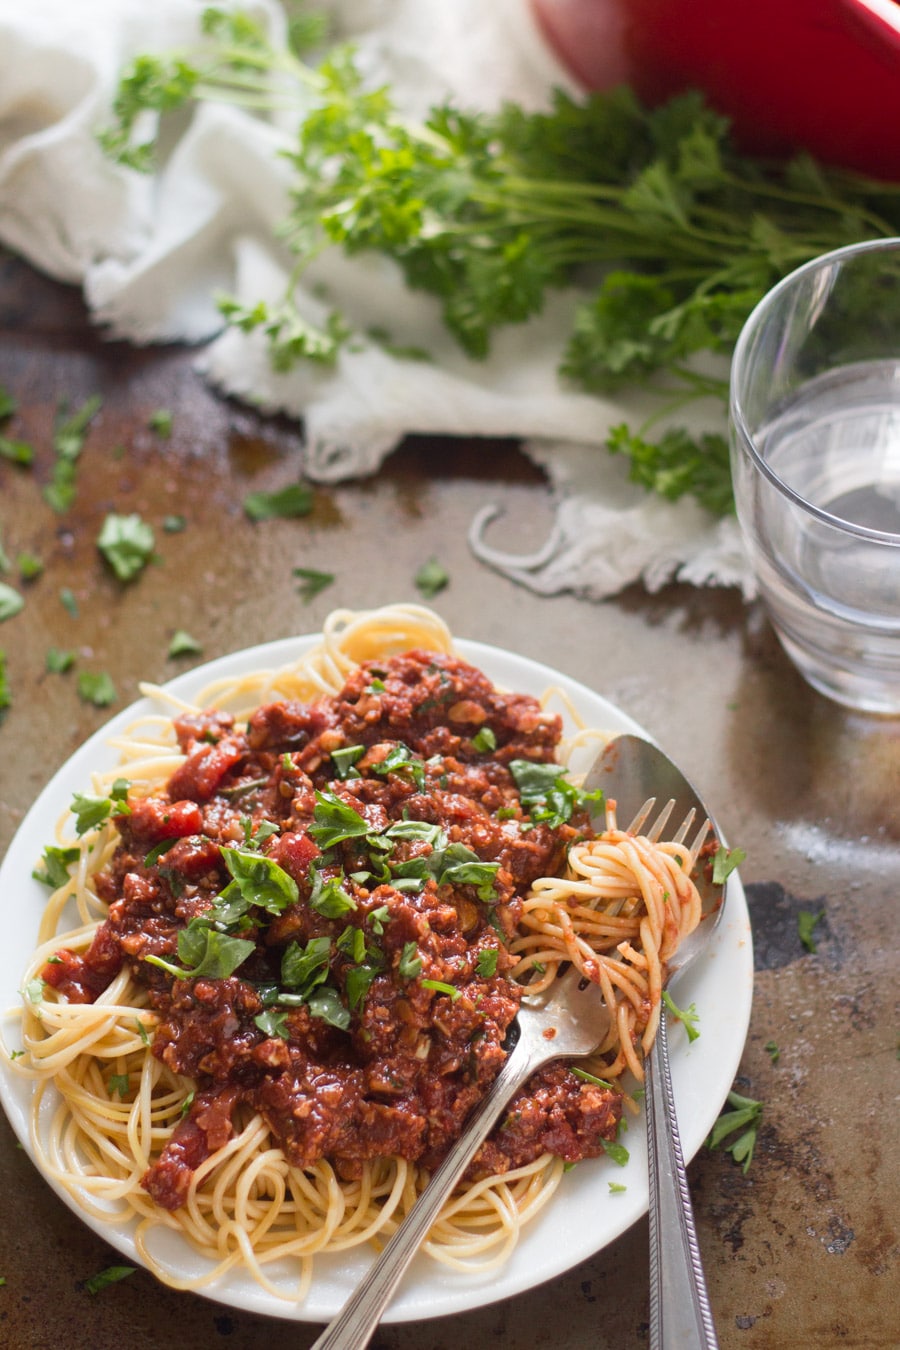 Spaghetti with Cauliflower Walnut Meat Sauce